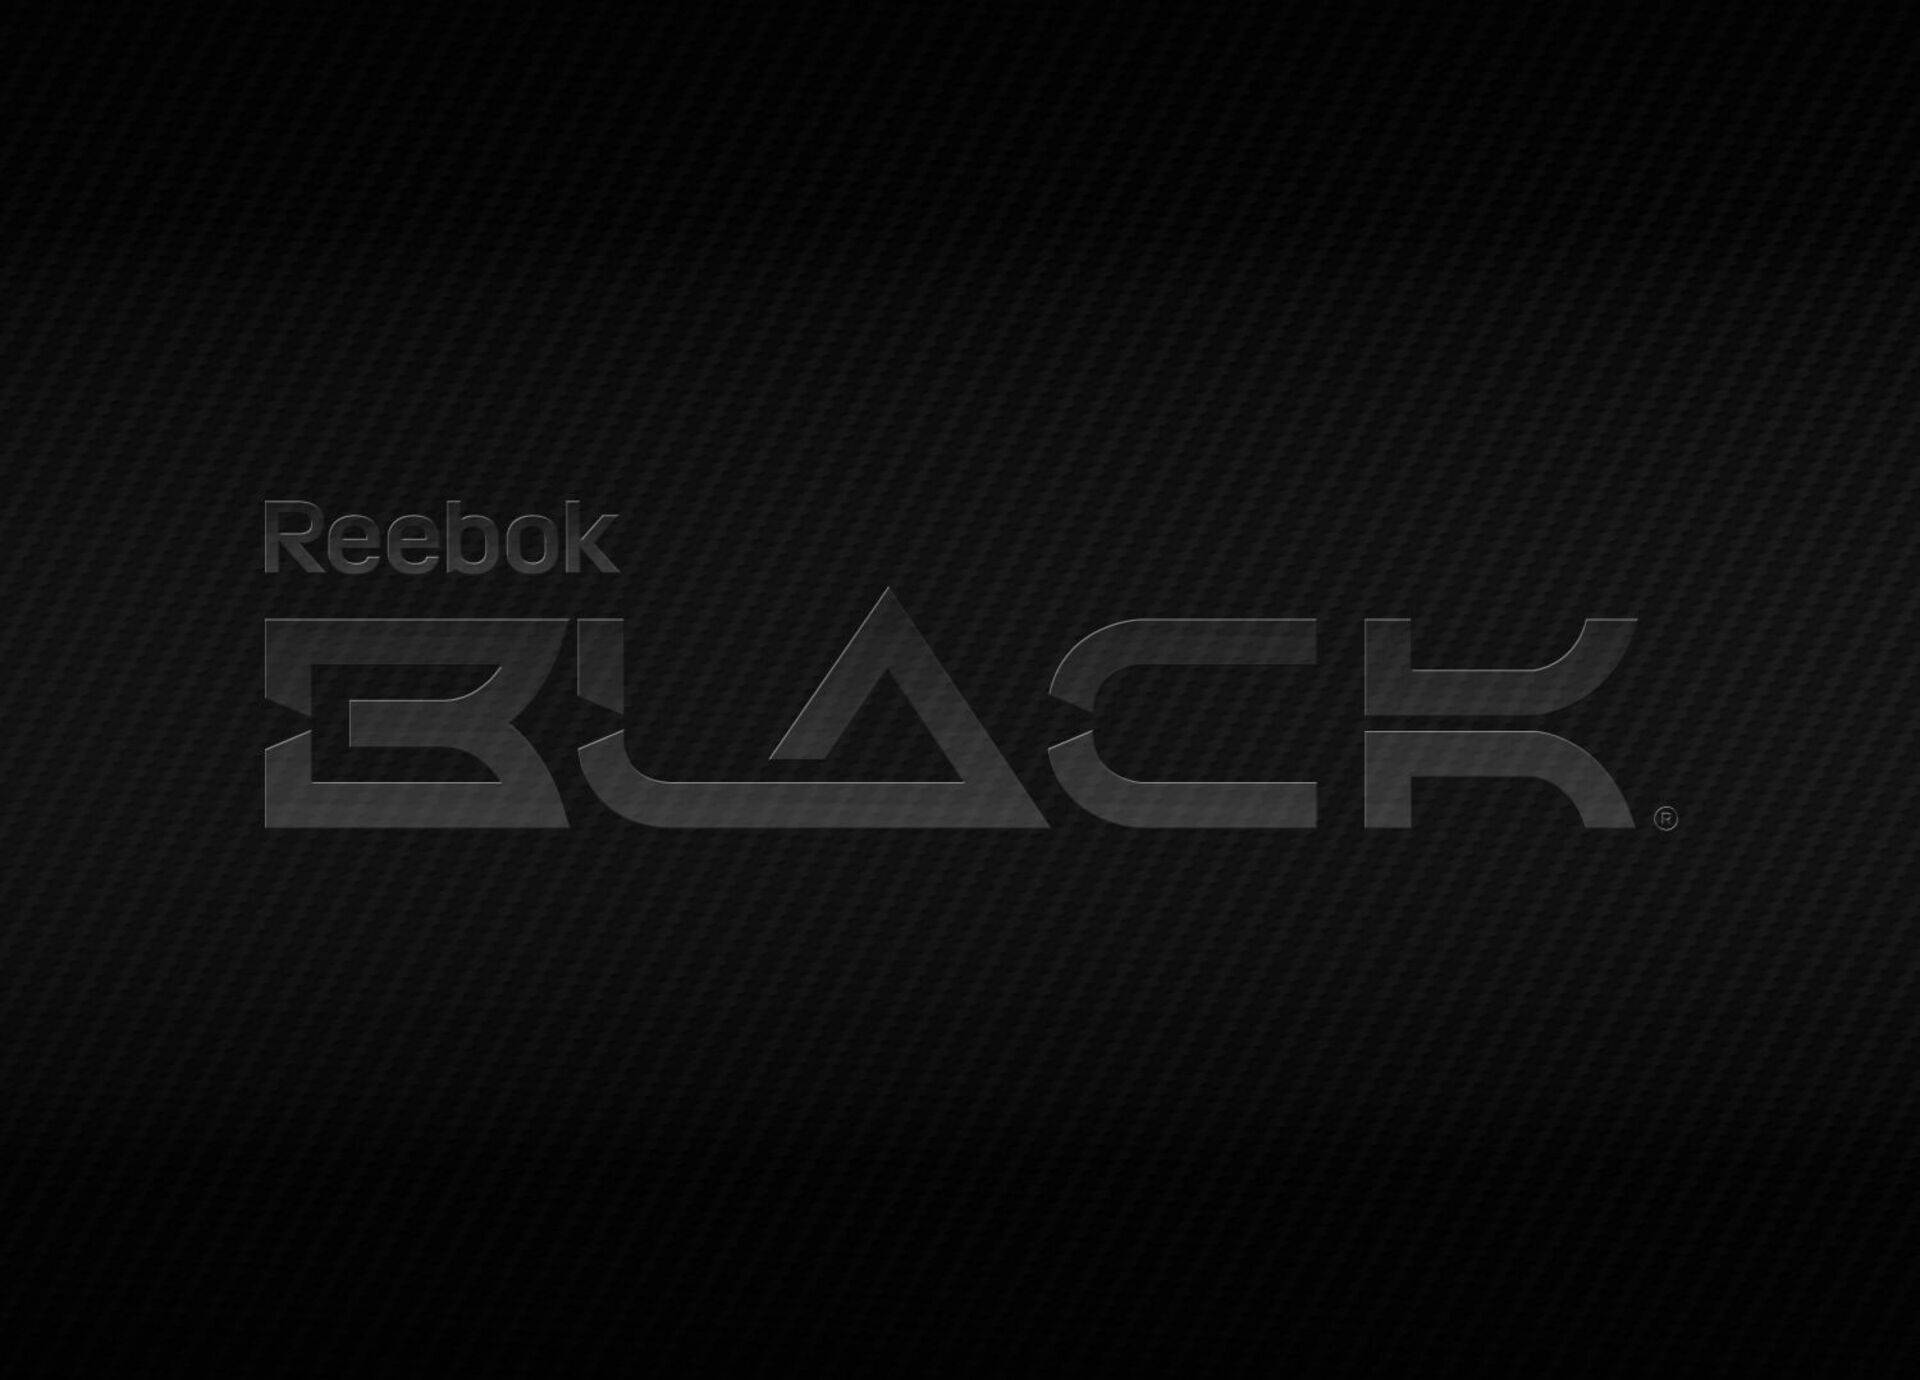 Textured Reebok Black Background